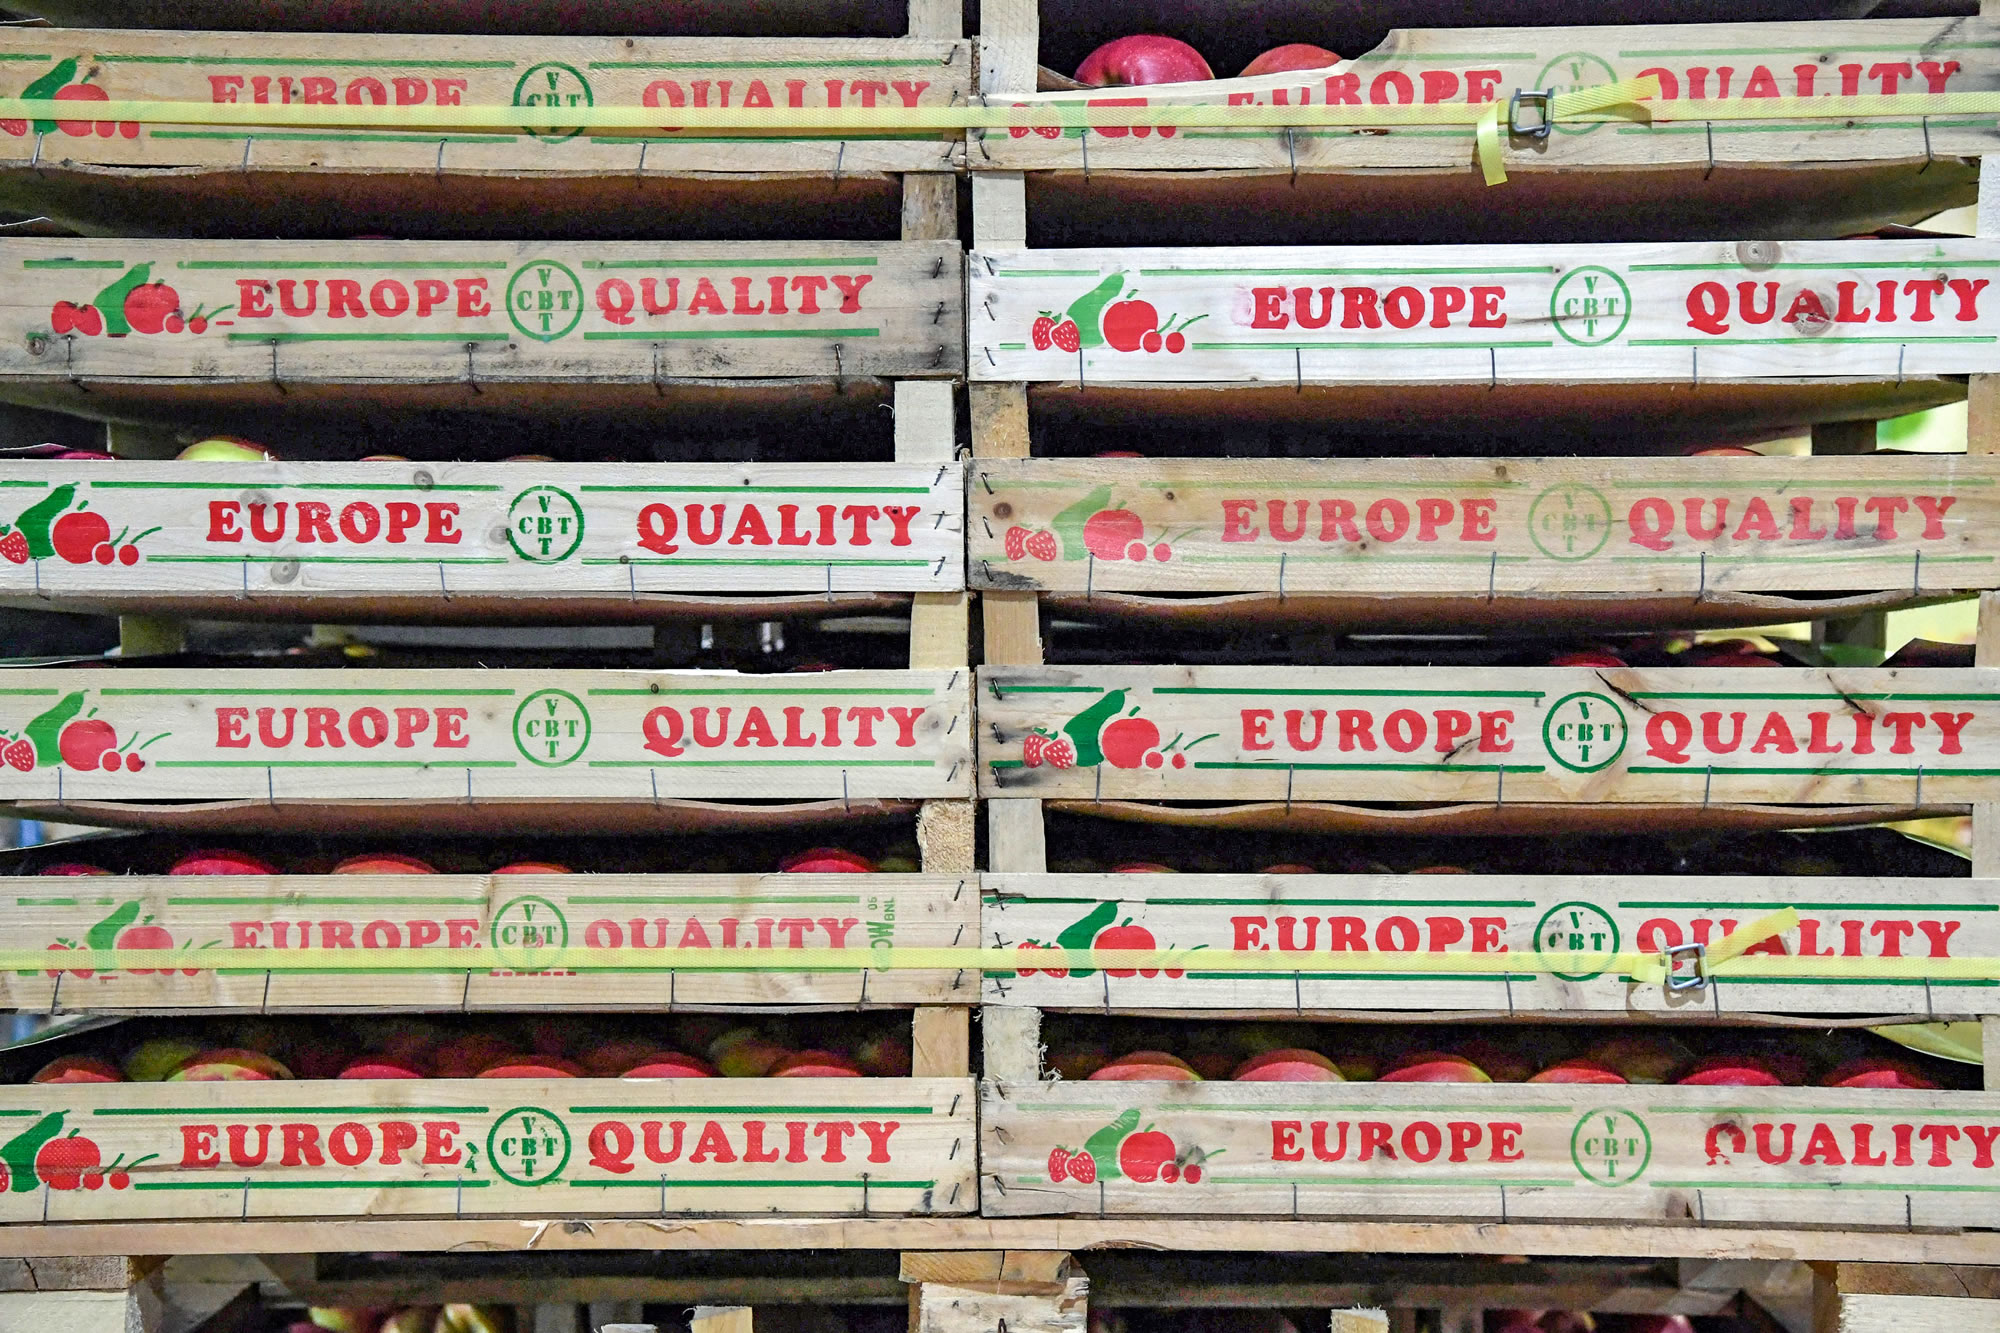 Kolme päällekkäin pinottua omenalaatikkoa, joiden kyljessä lukee ”Europe Quality”.